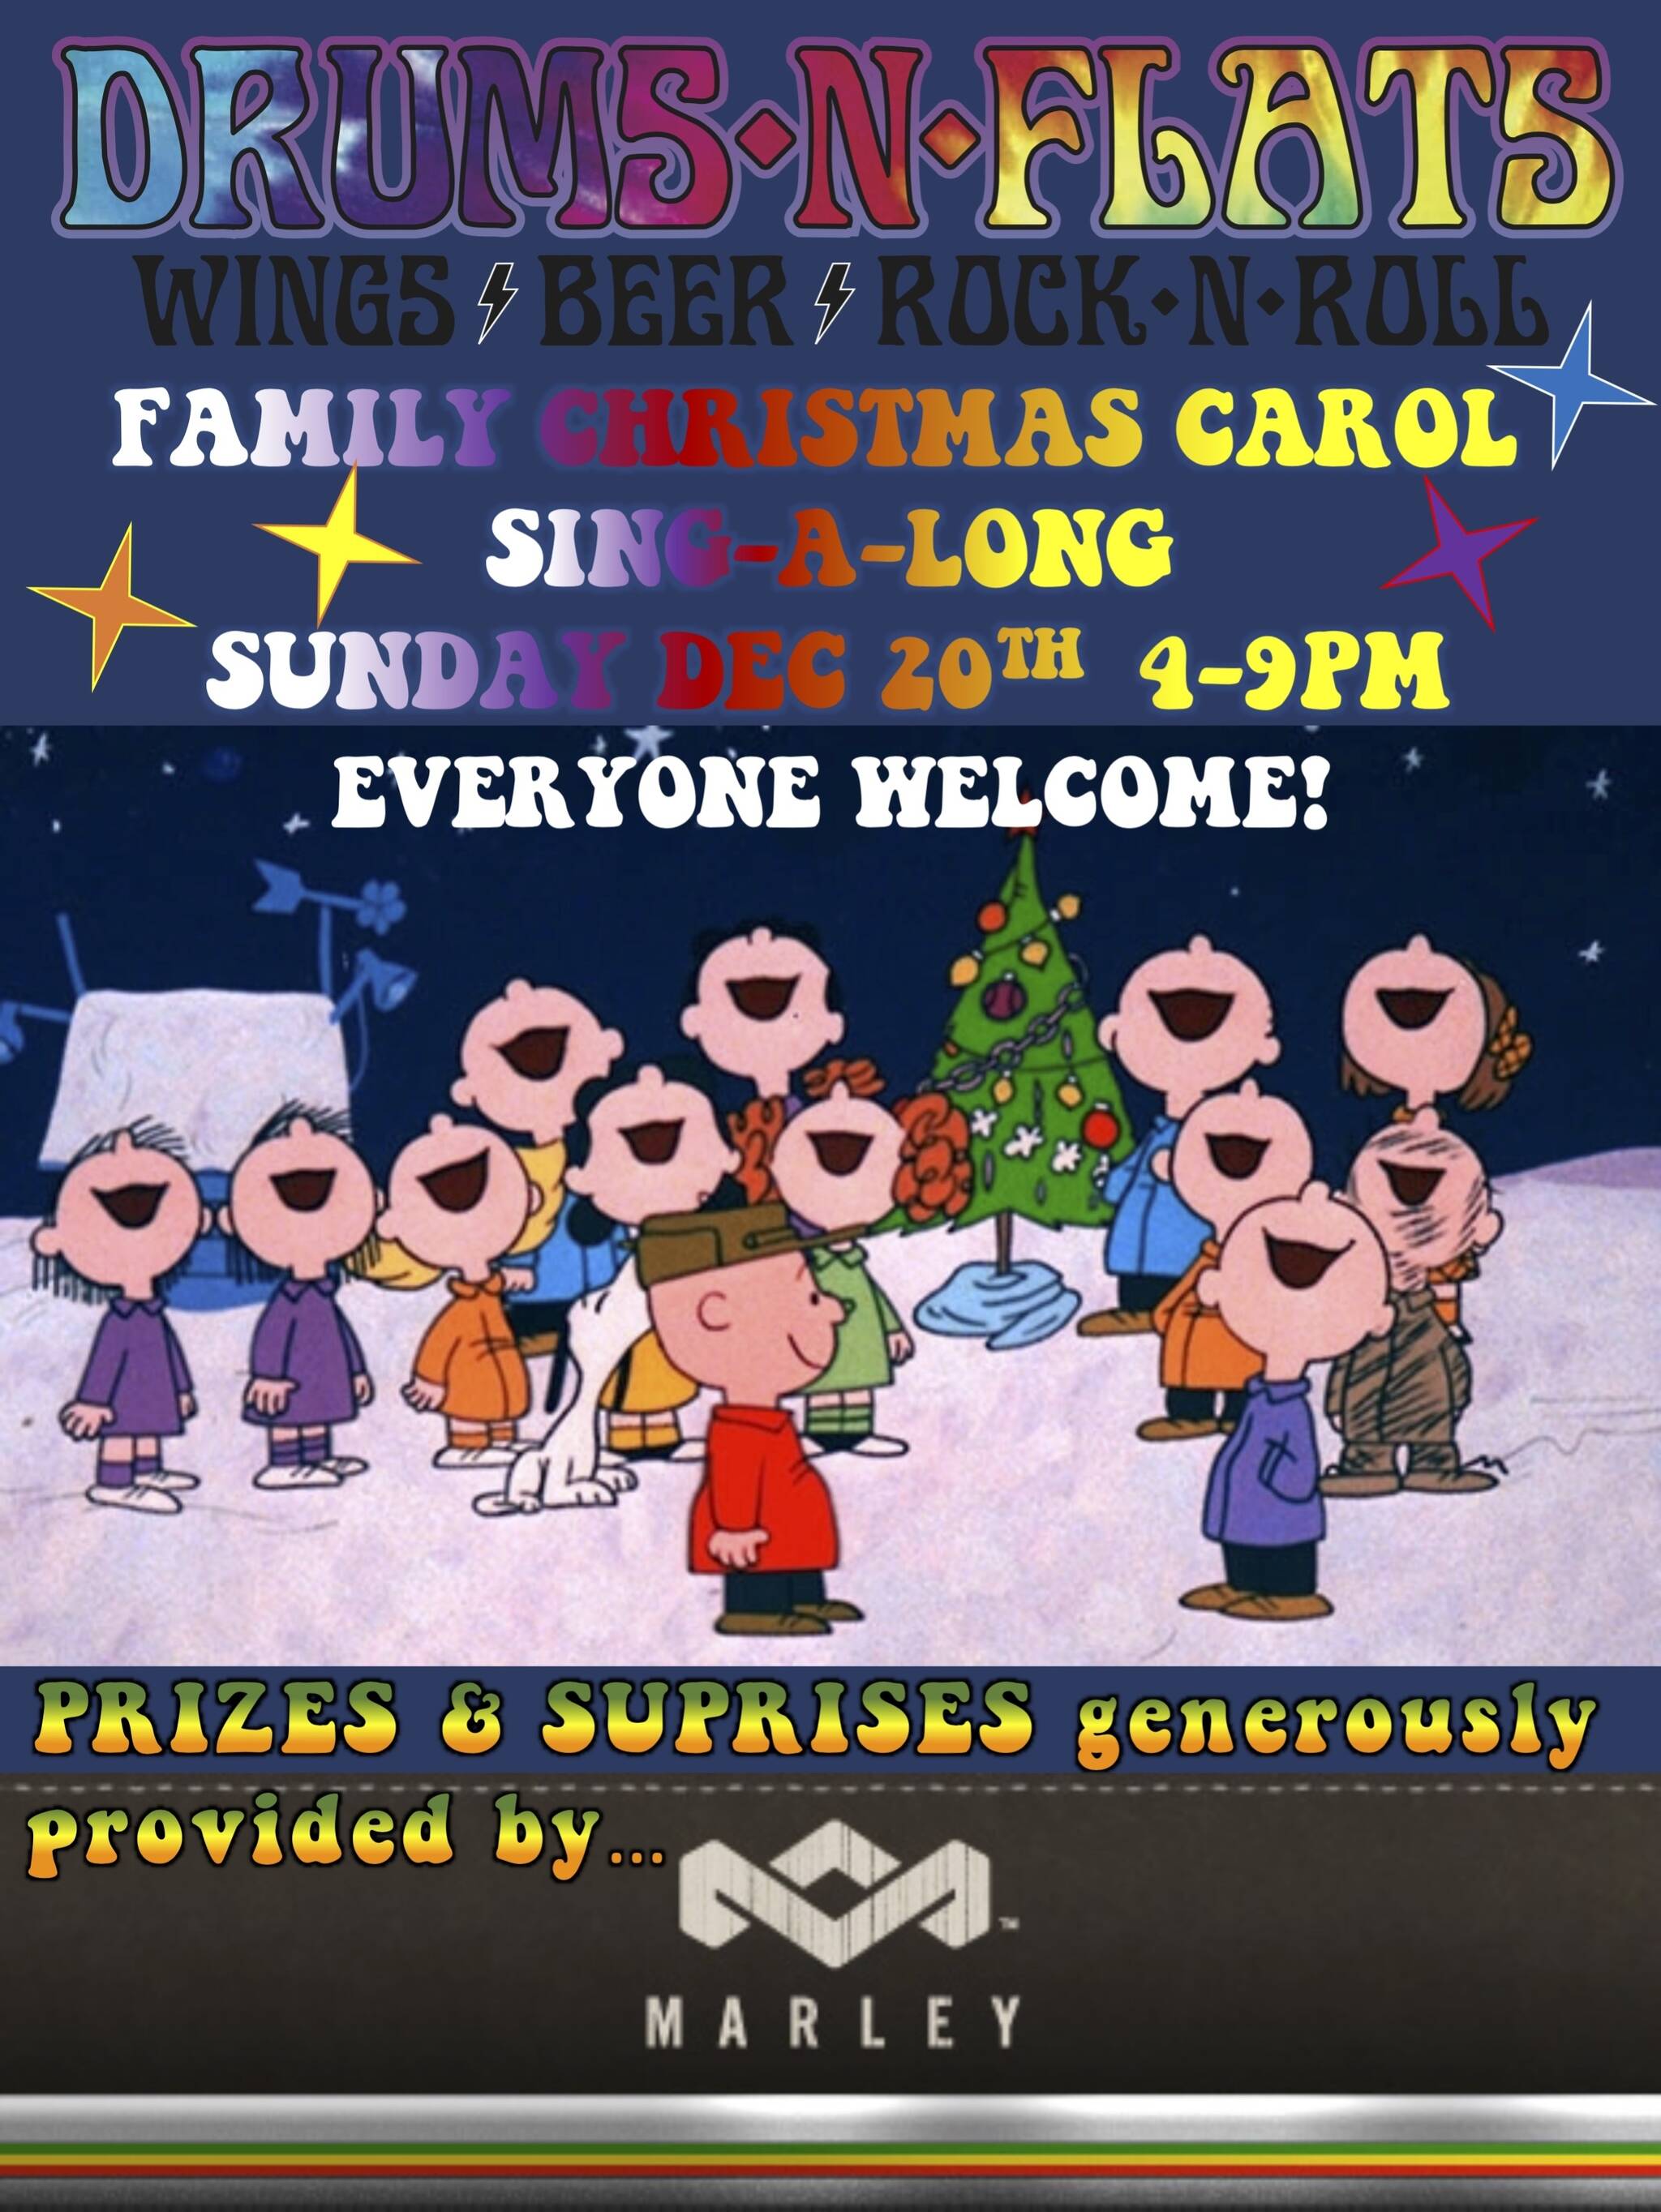 Family Christmas Carol Singalong at Drums N Flats